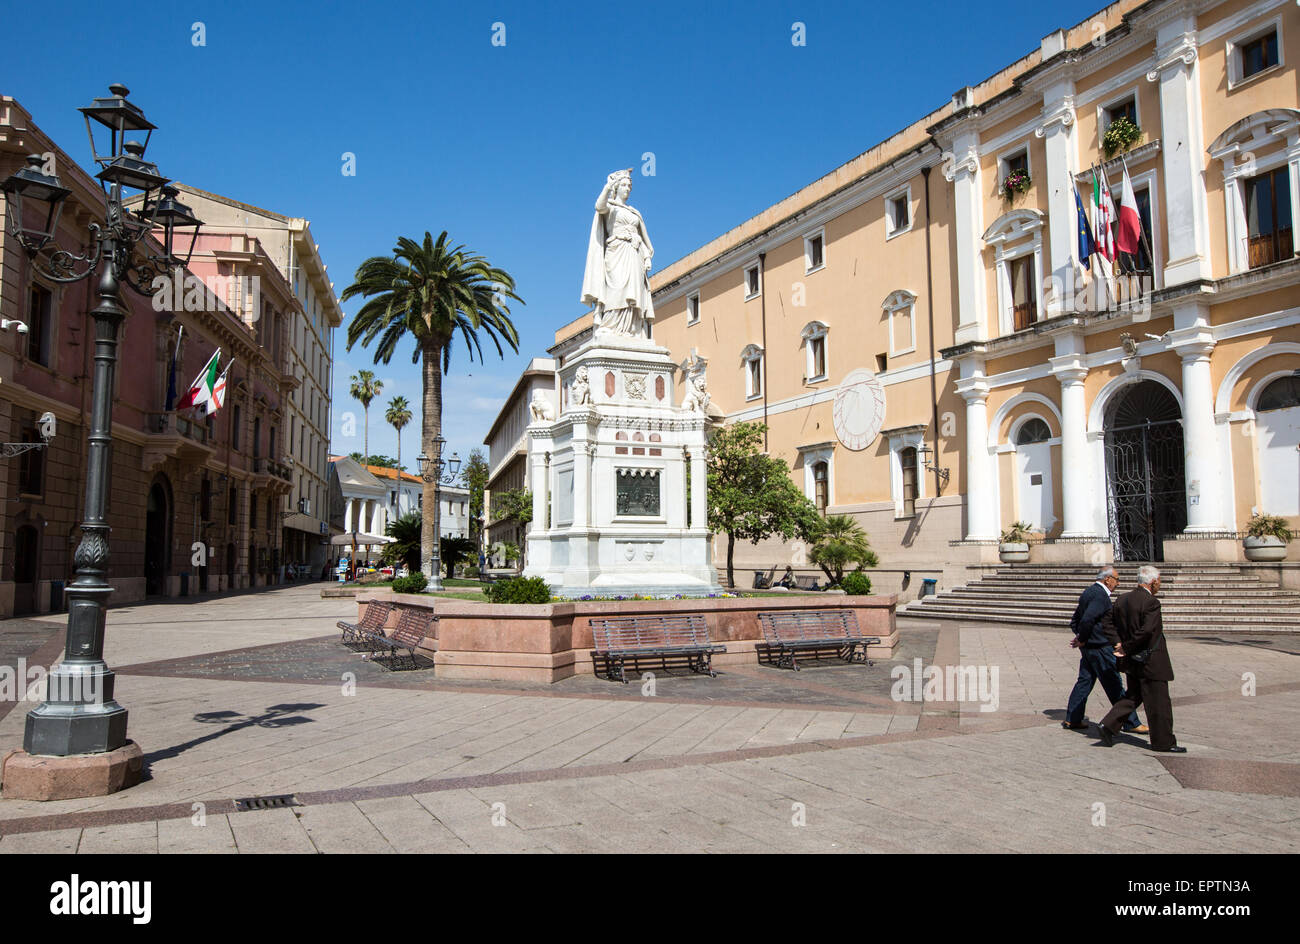 Monumento a Eleanora di Arboria [eroina di indipendenza sarda] centro di Oristano Sardegna Italia Foto Stock